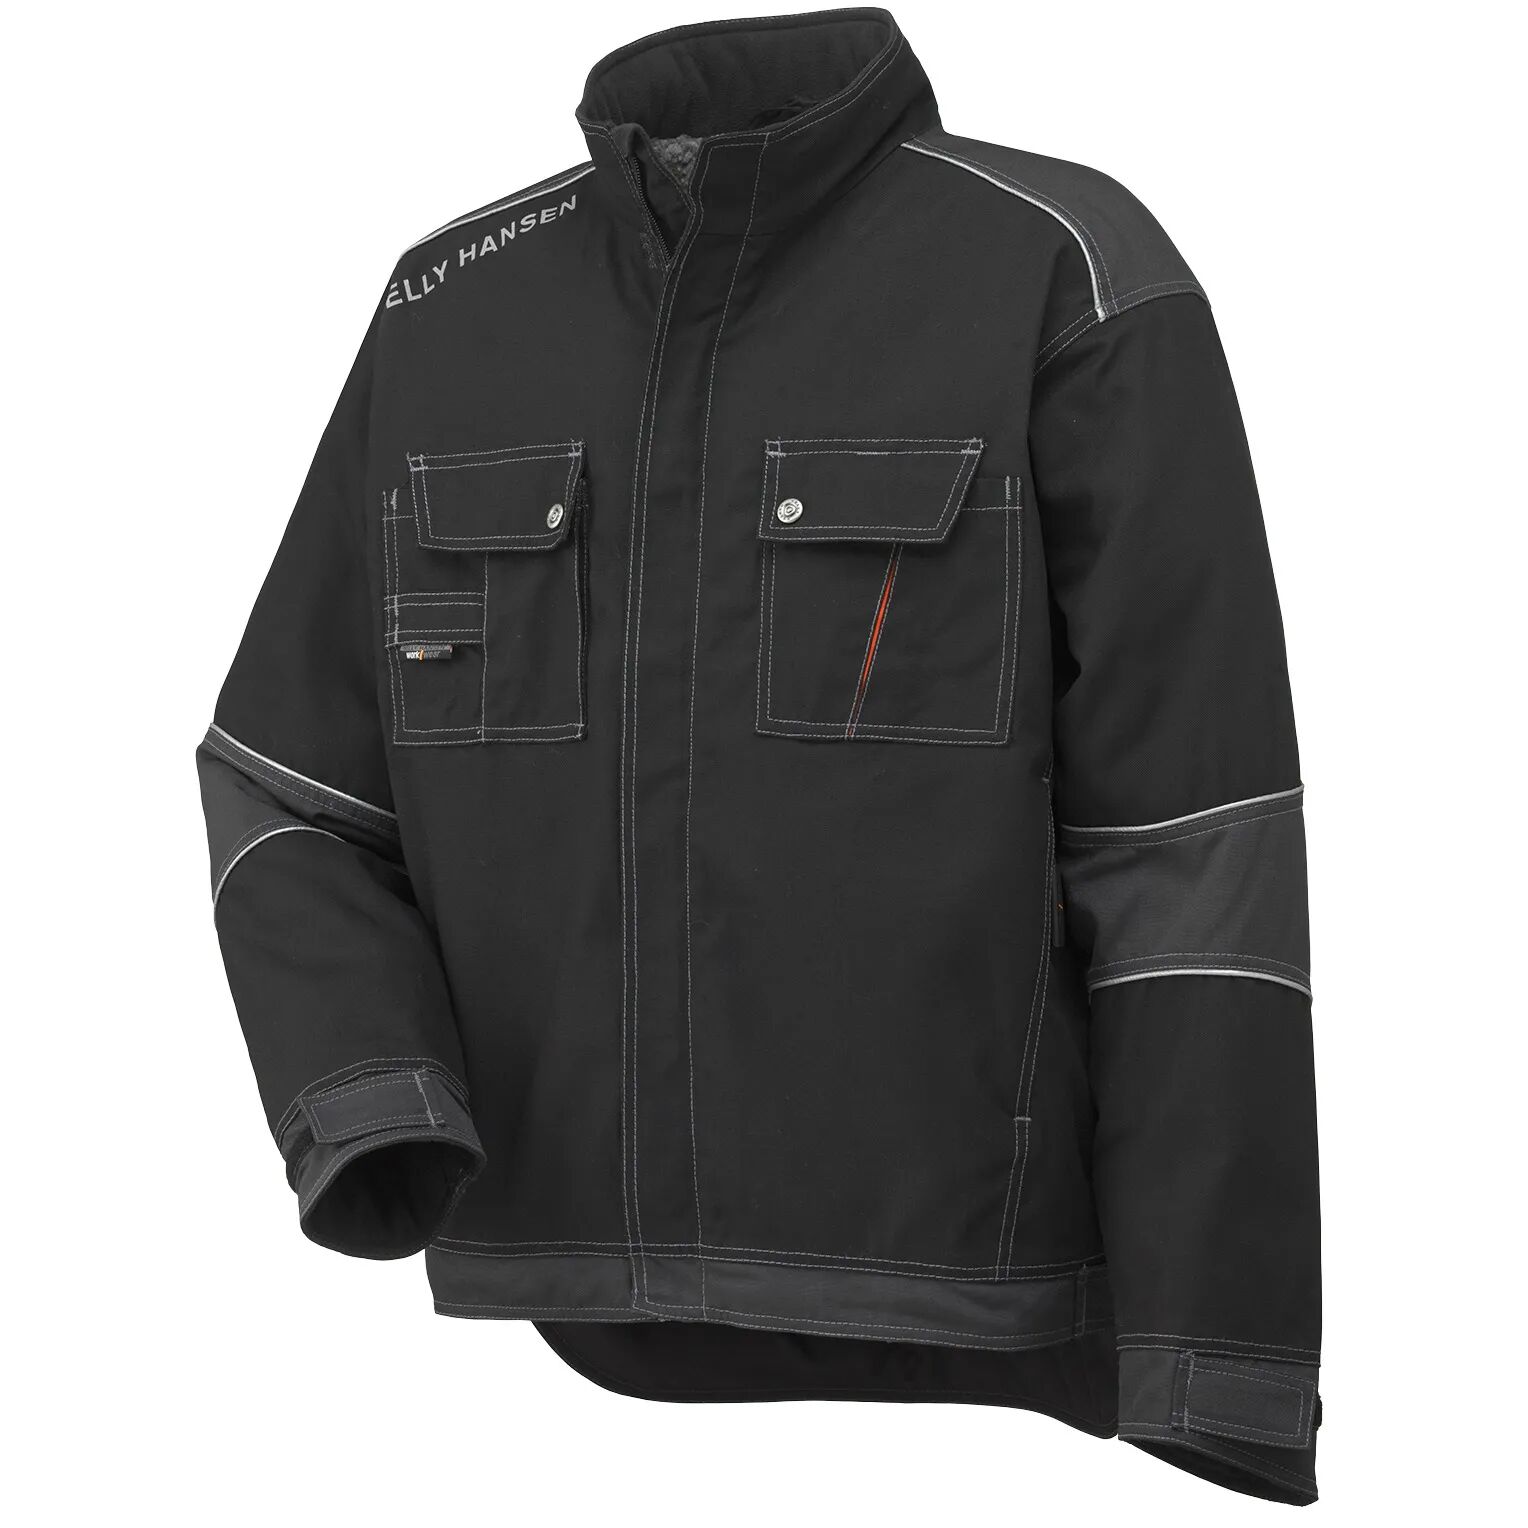 HH Workwear Helly Hansen WorkwearChelsea Insulated Winter Work Jacket Black M